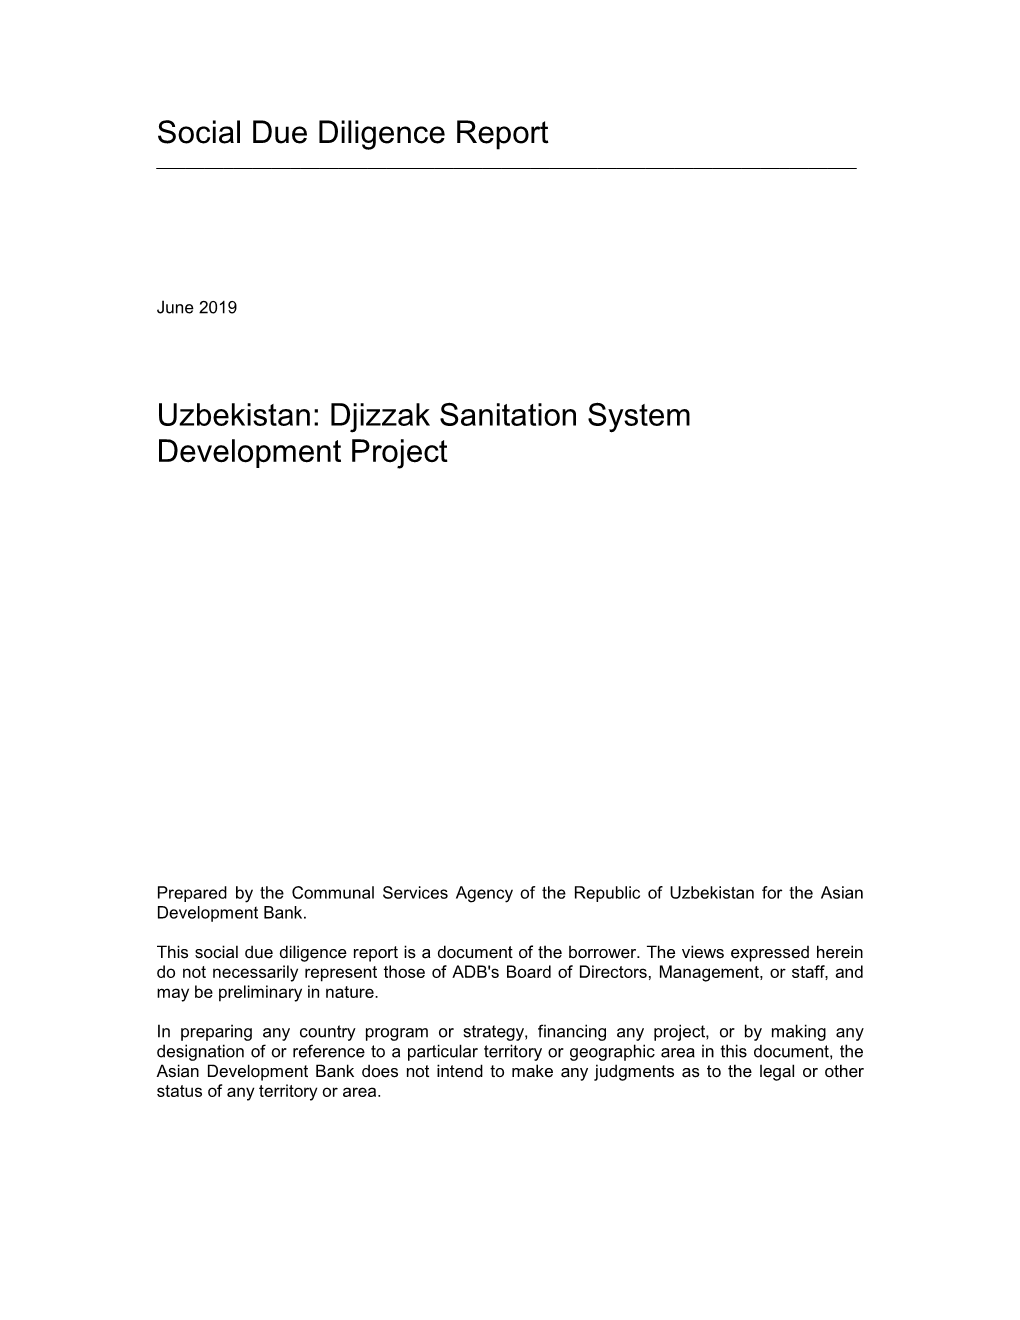 46135-002: Djizzak Sanitation System Development Project